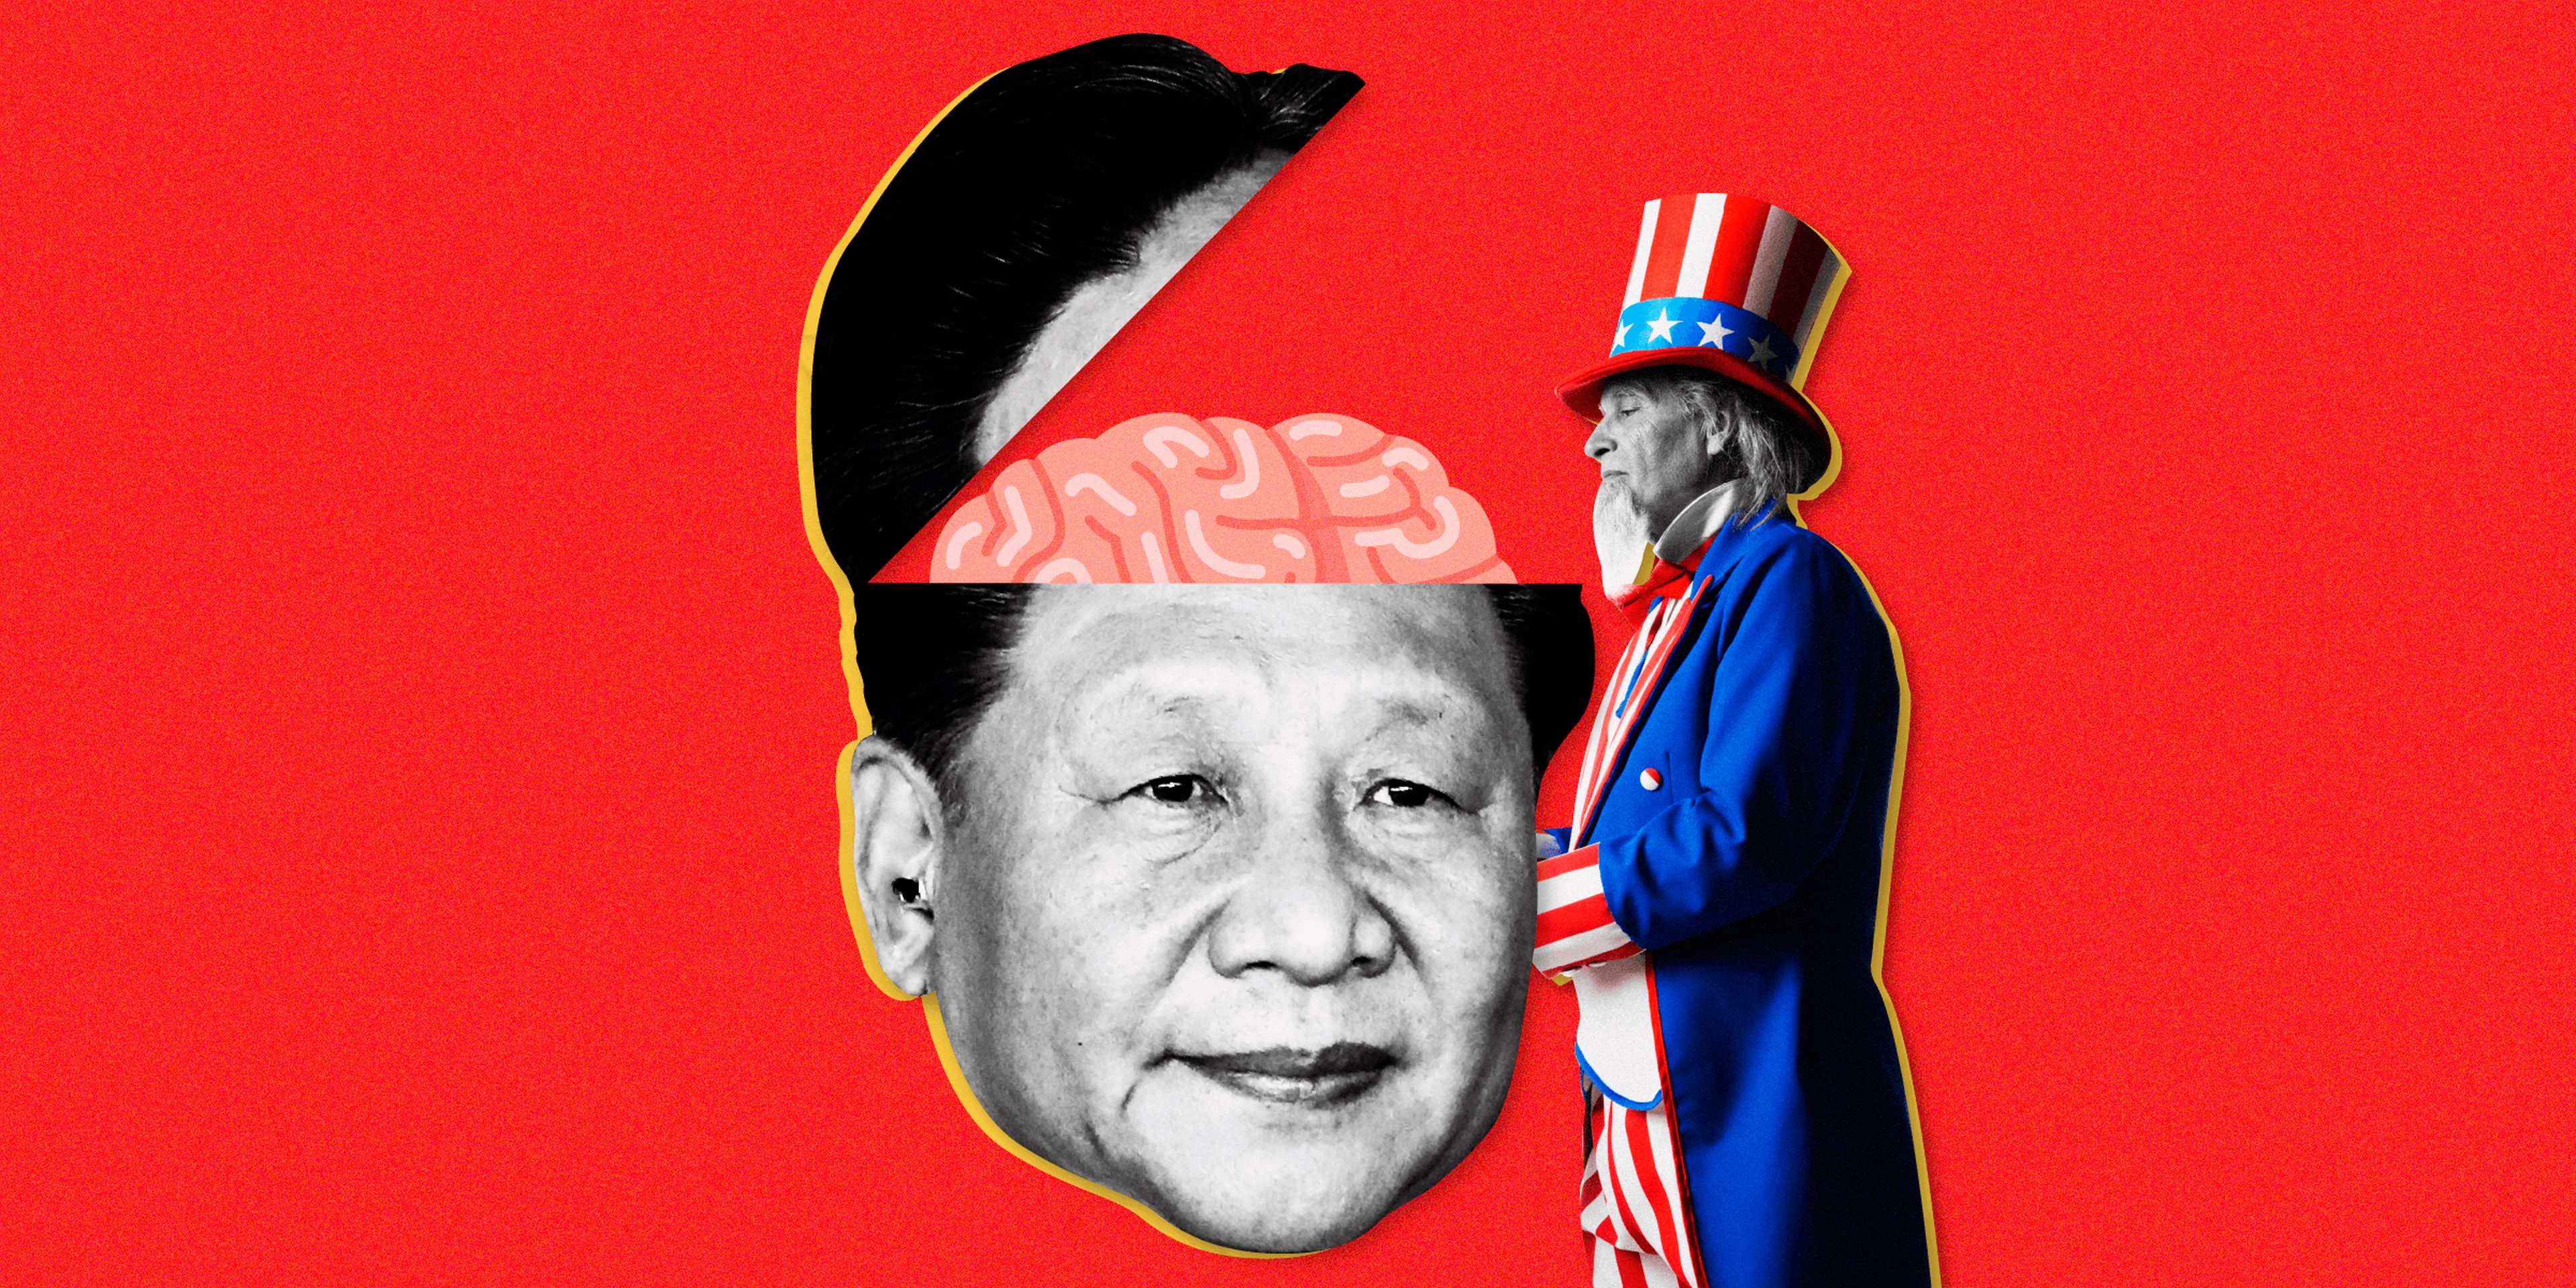 El presidente chino Xi Jinping se ha convertido en el líder más poderoso del país desde Mao. Comprender su estilo agresivo es la clave para entender el futuro del mundo.